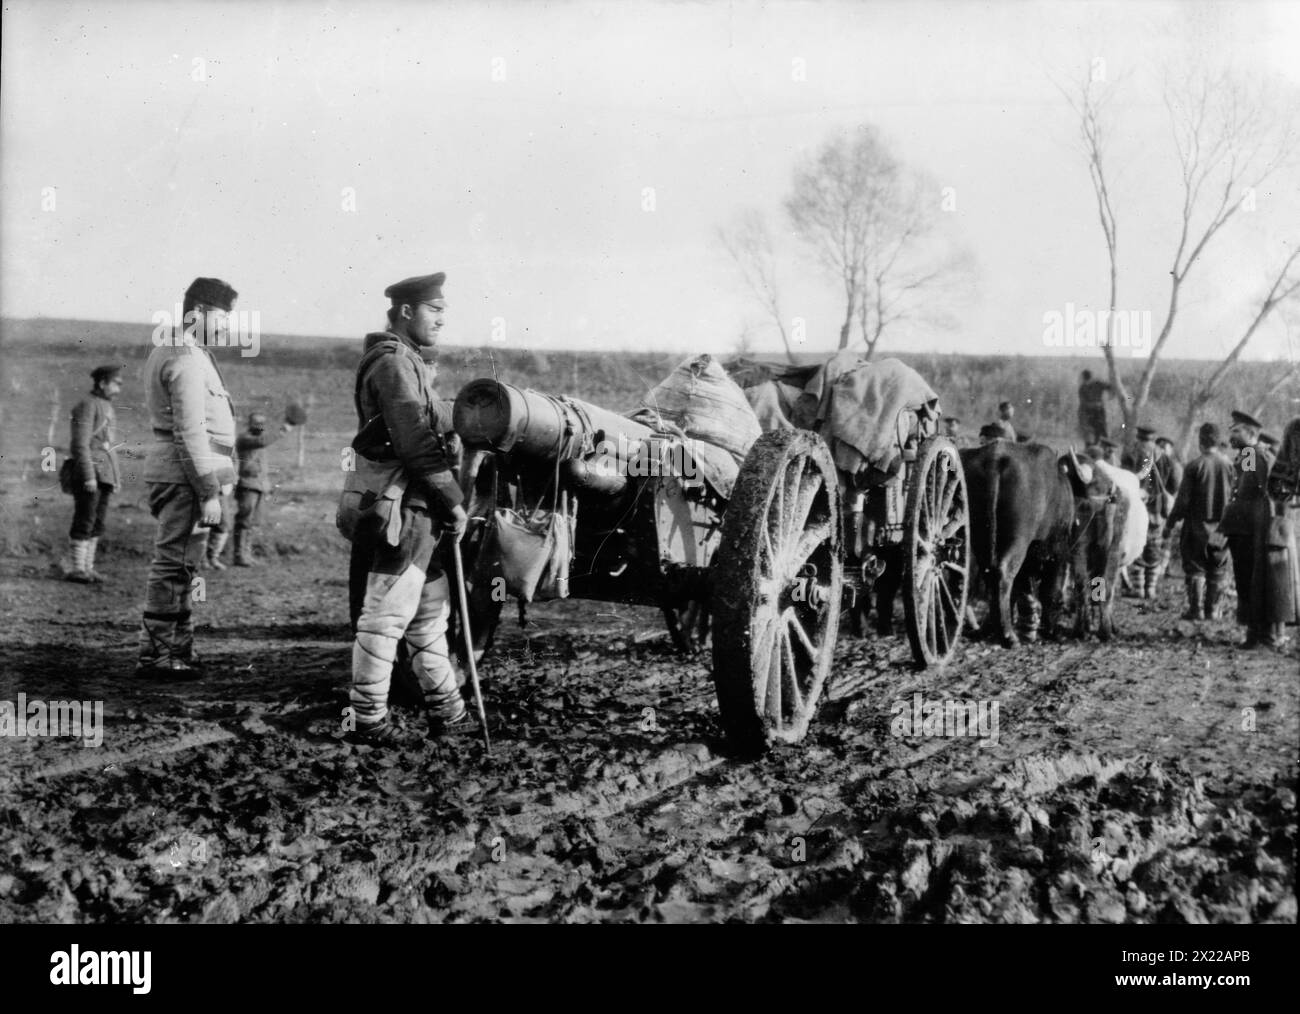 Zwischen 1910 und 1915 bringt man Big Bulgar Guns nach Tchataldja #12. Zeigt Bulgaren, die während der Balkankriege Waffen nach Katalka, Türkei, bringen. Stockfoto